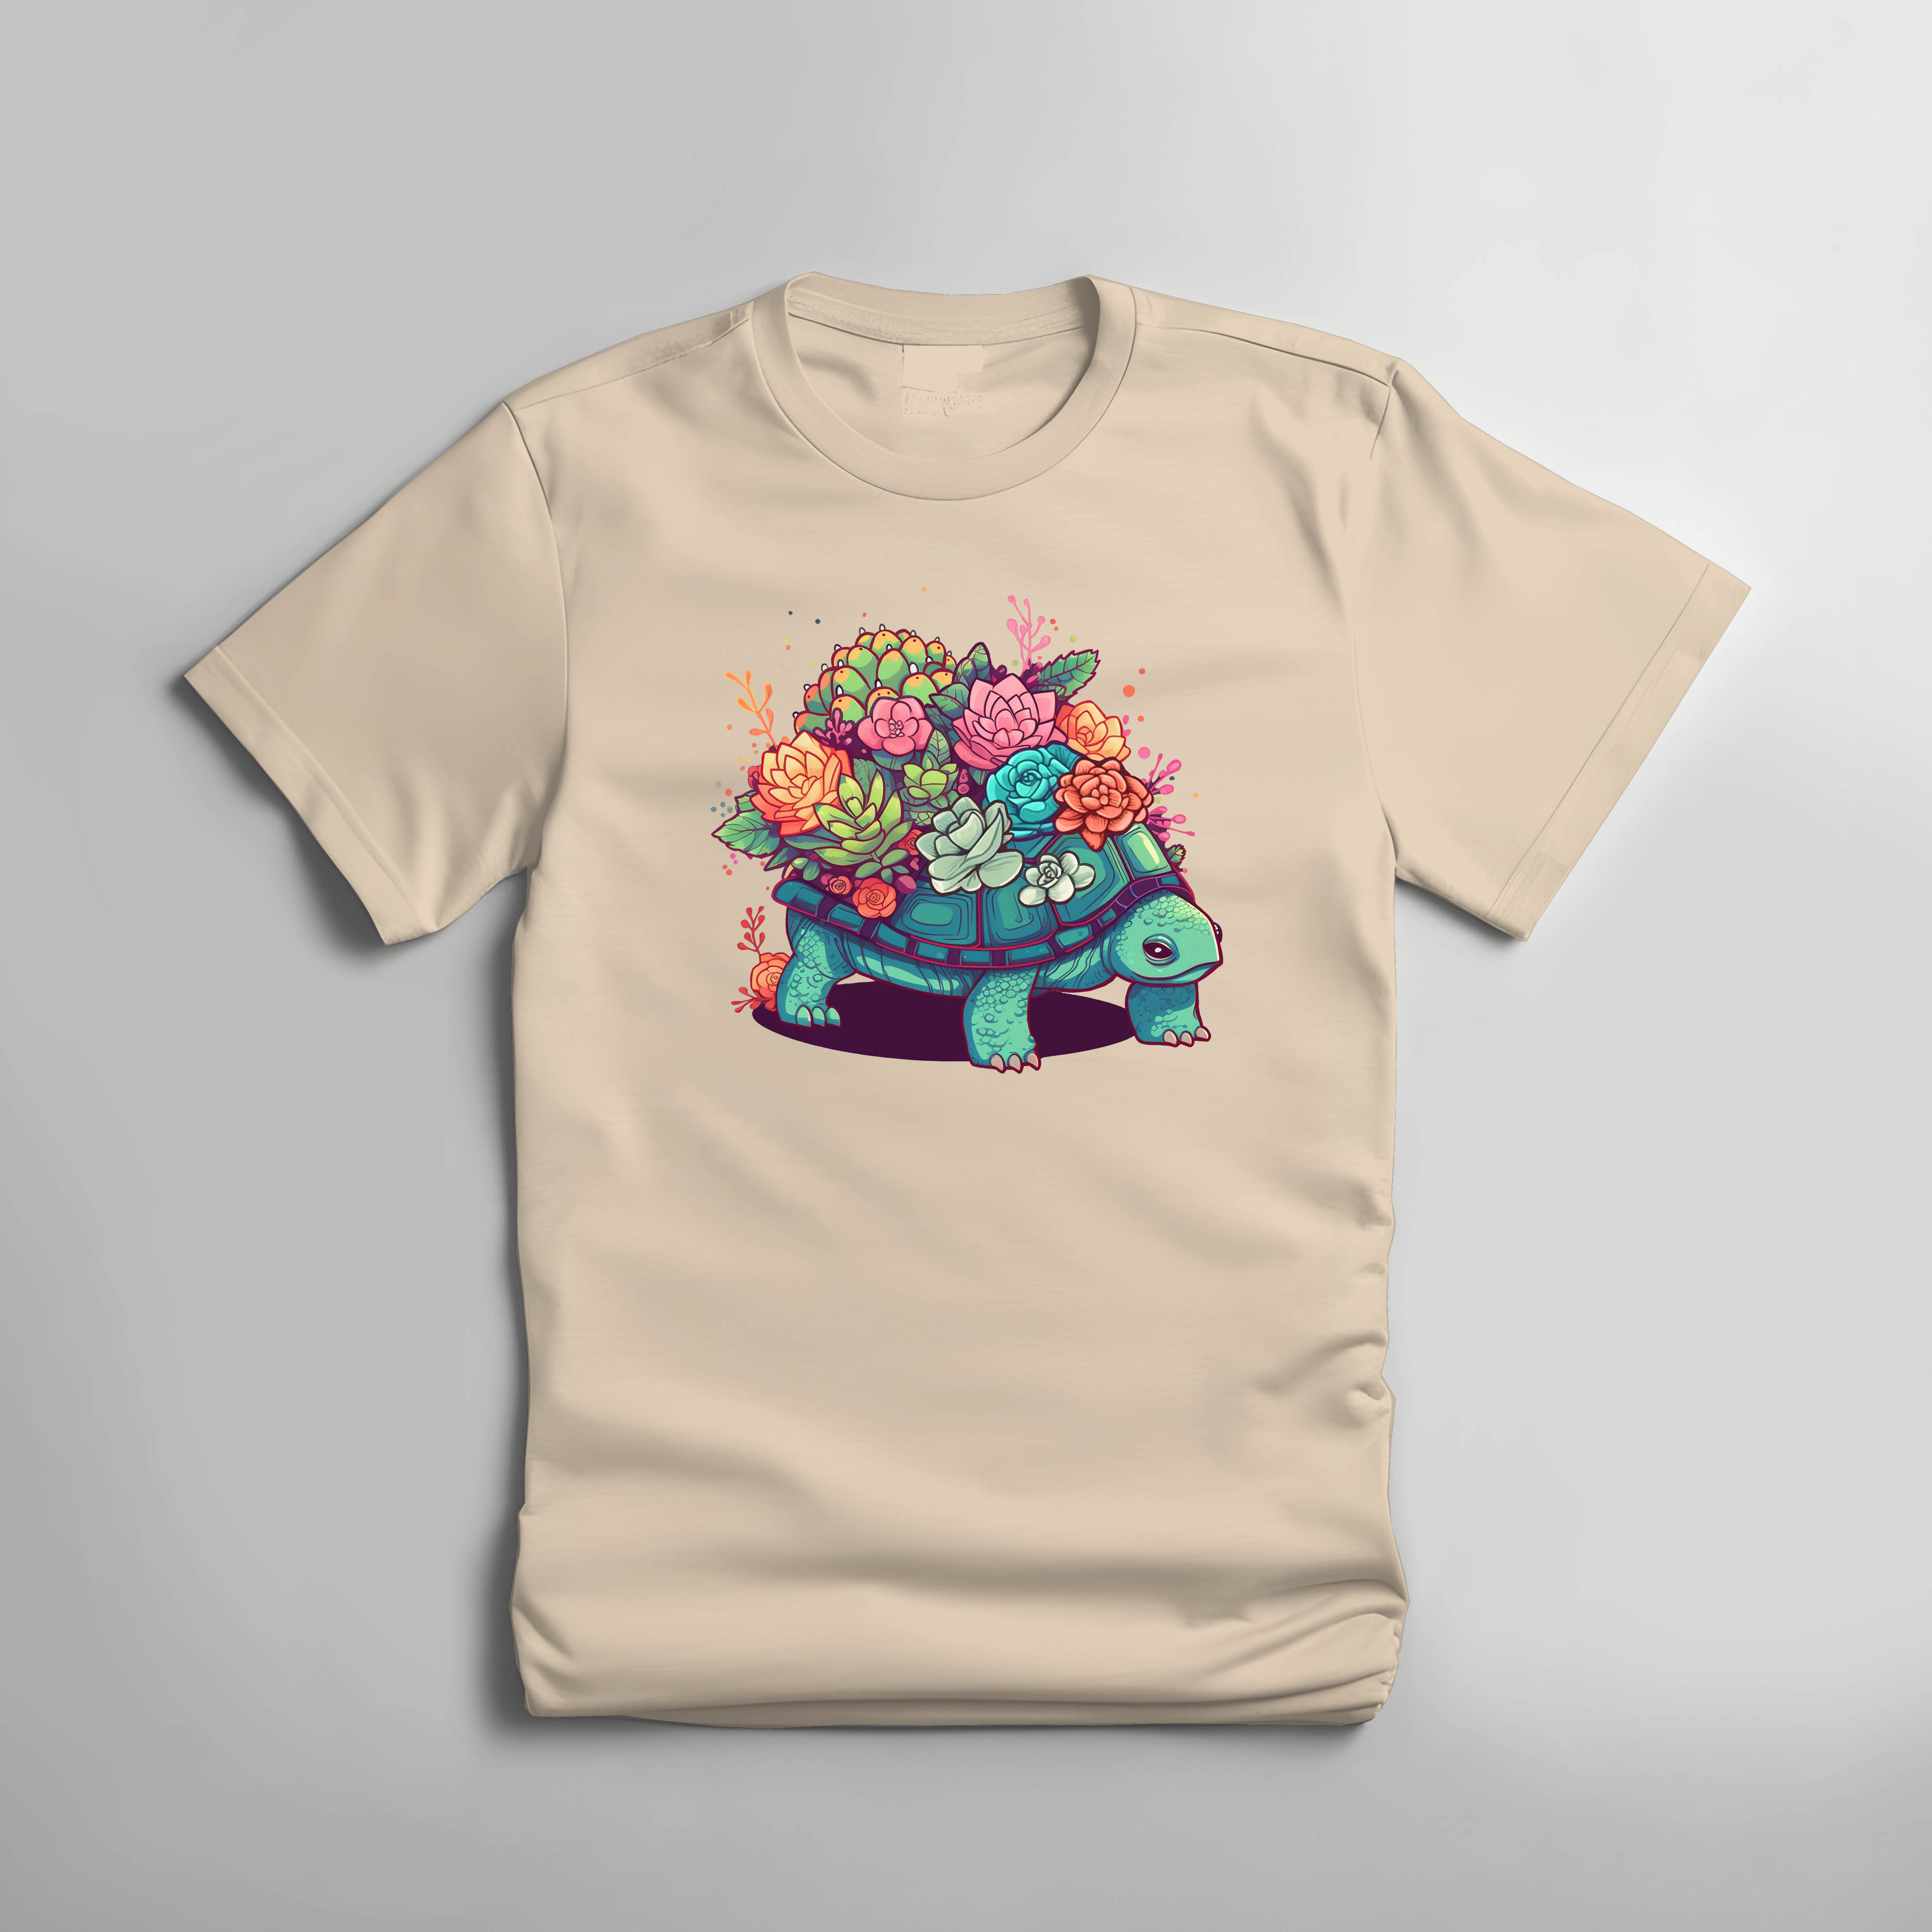 Succulent Turtle T-shirt - My Little Garden - Natural